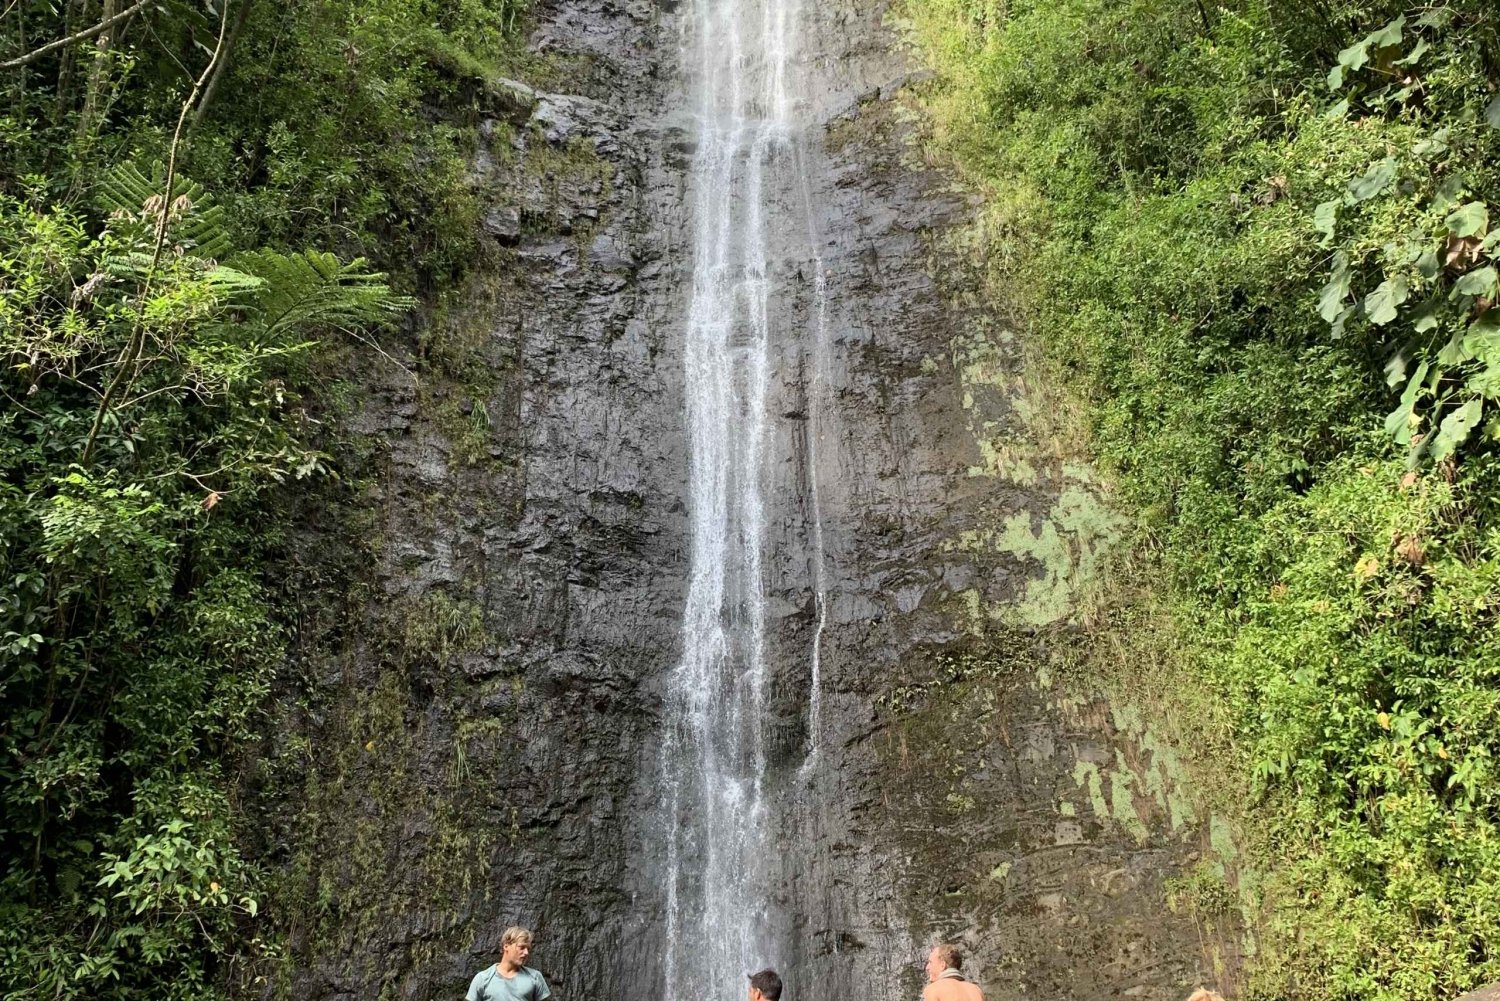 Manoa watervallen eBike naar wandeling